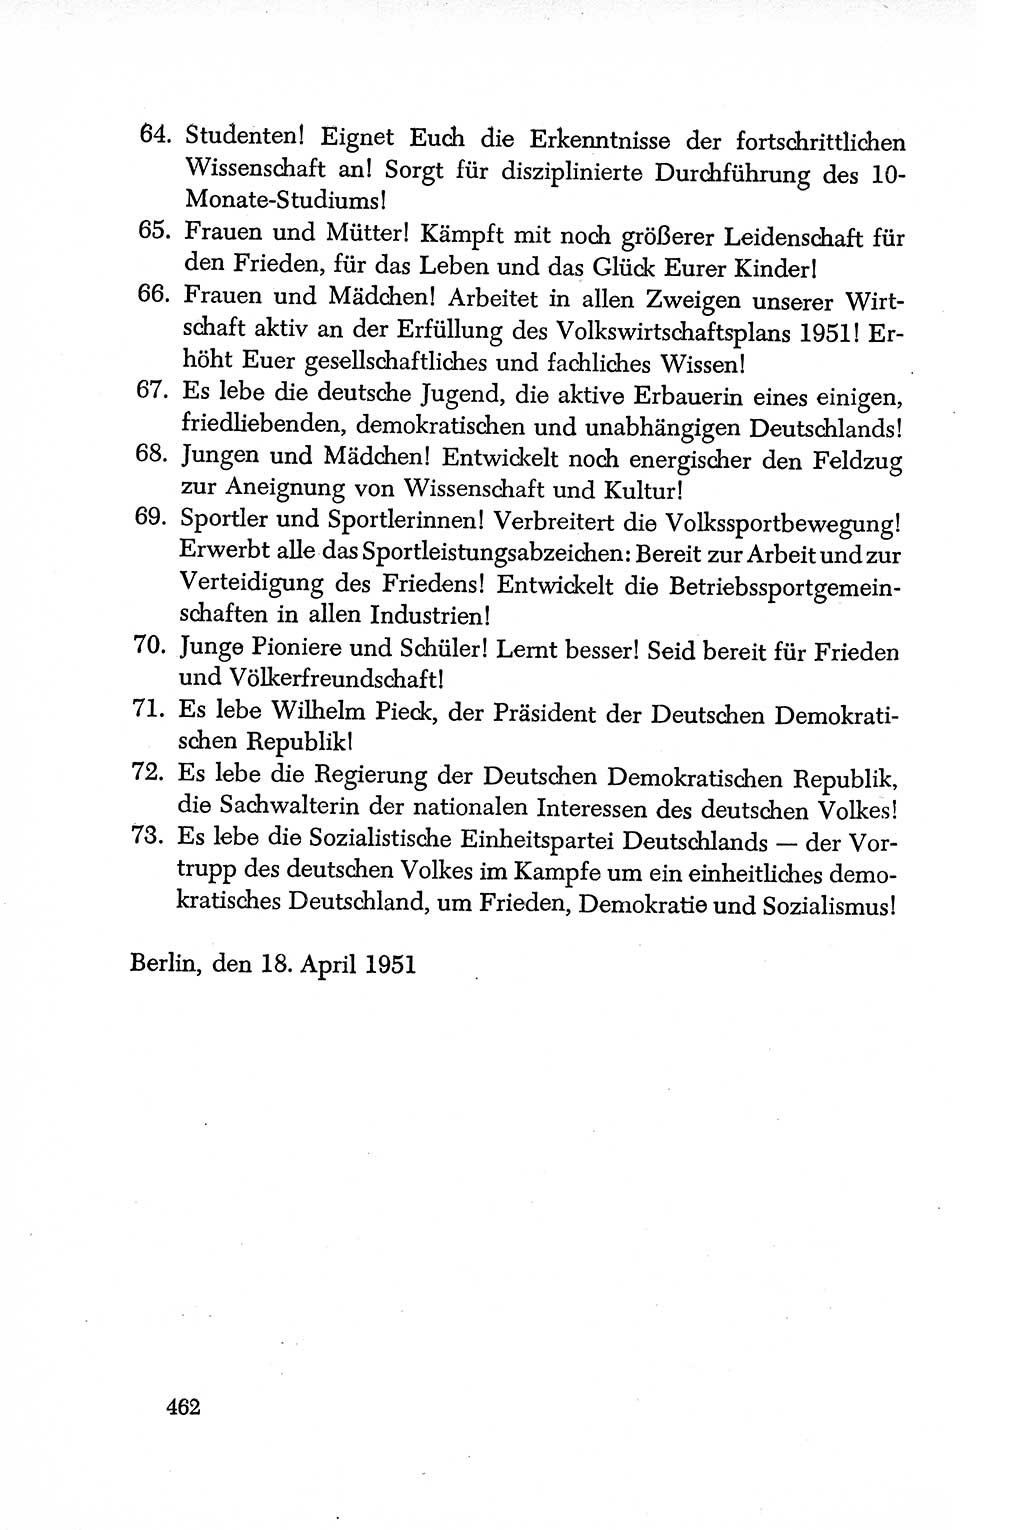 Dokumente der Sozialistischen Einheitspartei Deutschlands (SED) [Deutsche Demokratische Republik (DDR)] 1950-1952, Seite 462 (Dok. SED DDR 1950-1952, S. 462)